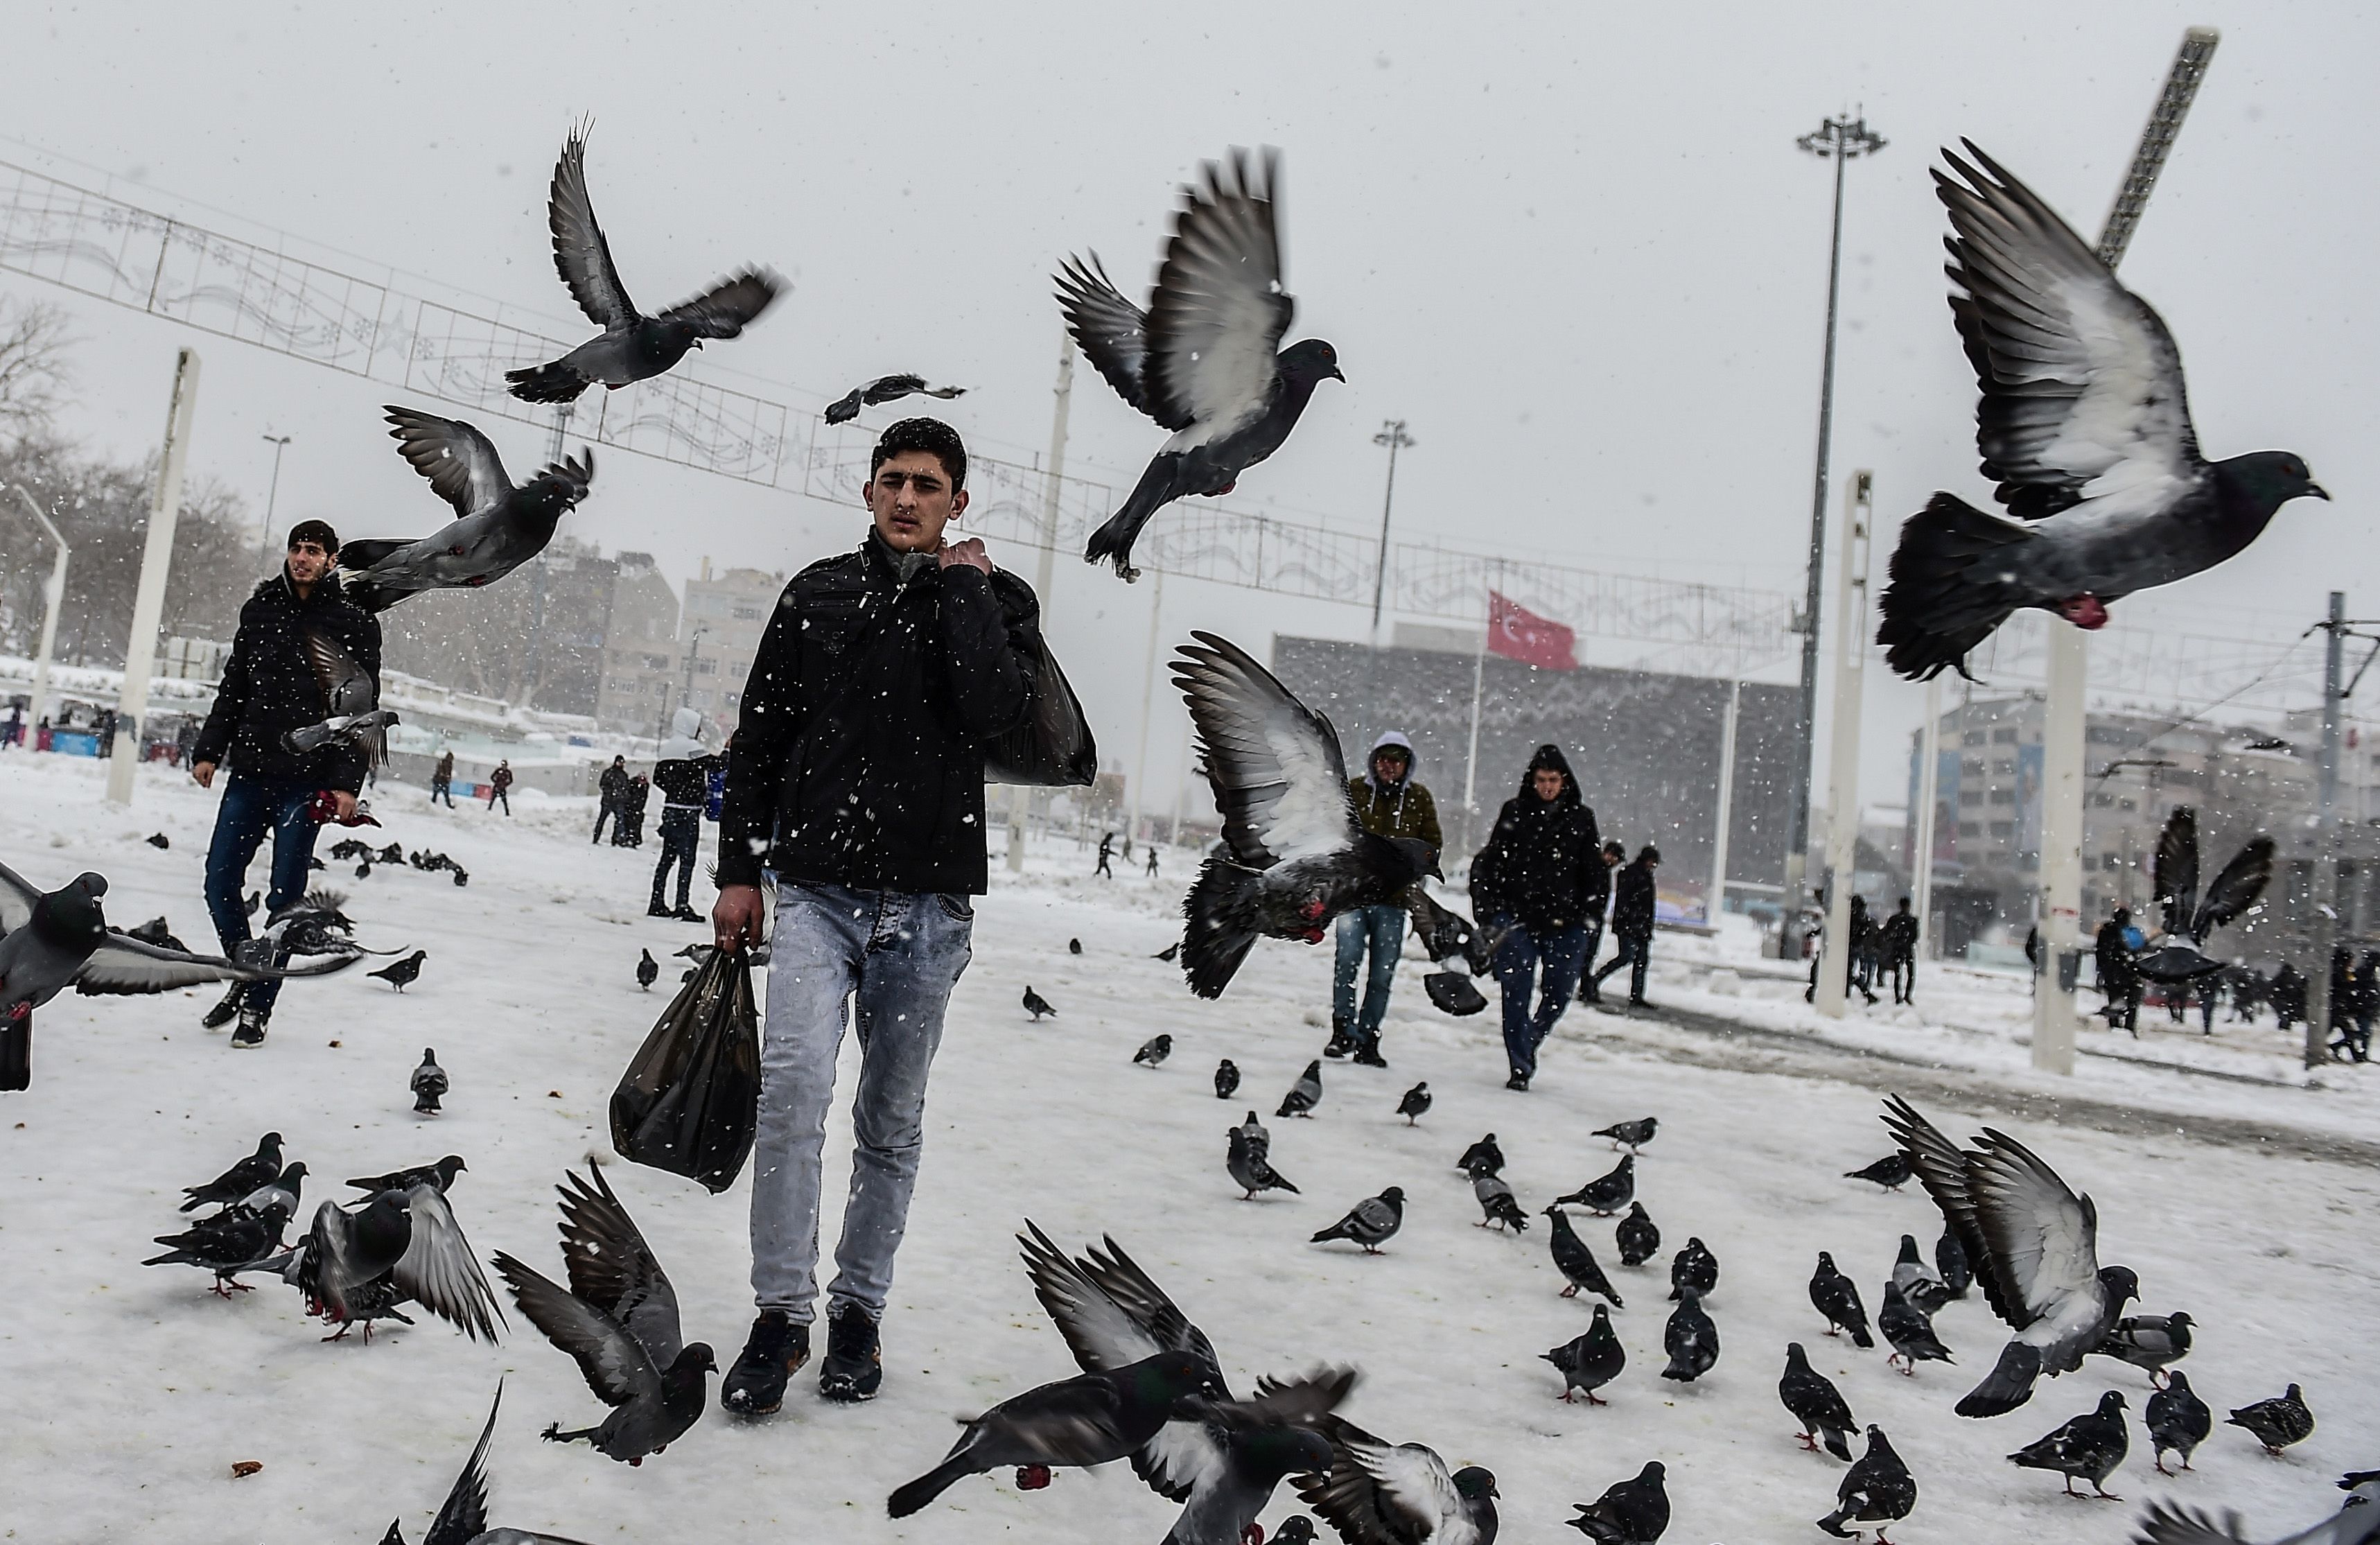 الطيور والشباب وسط الثلوج فى تركيا